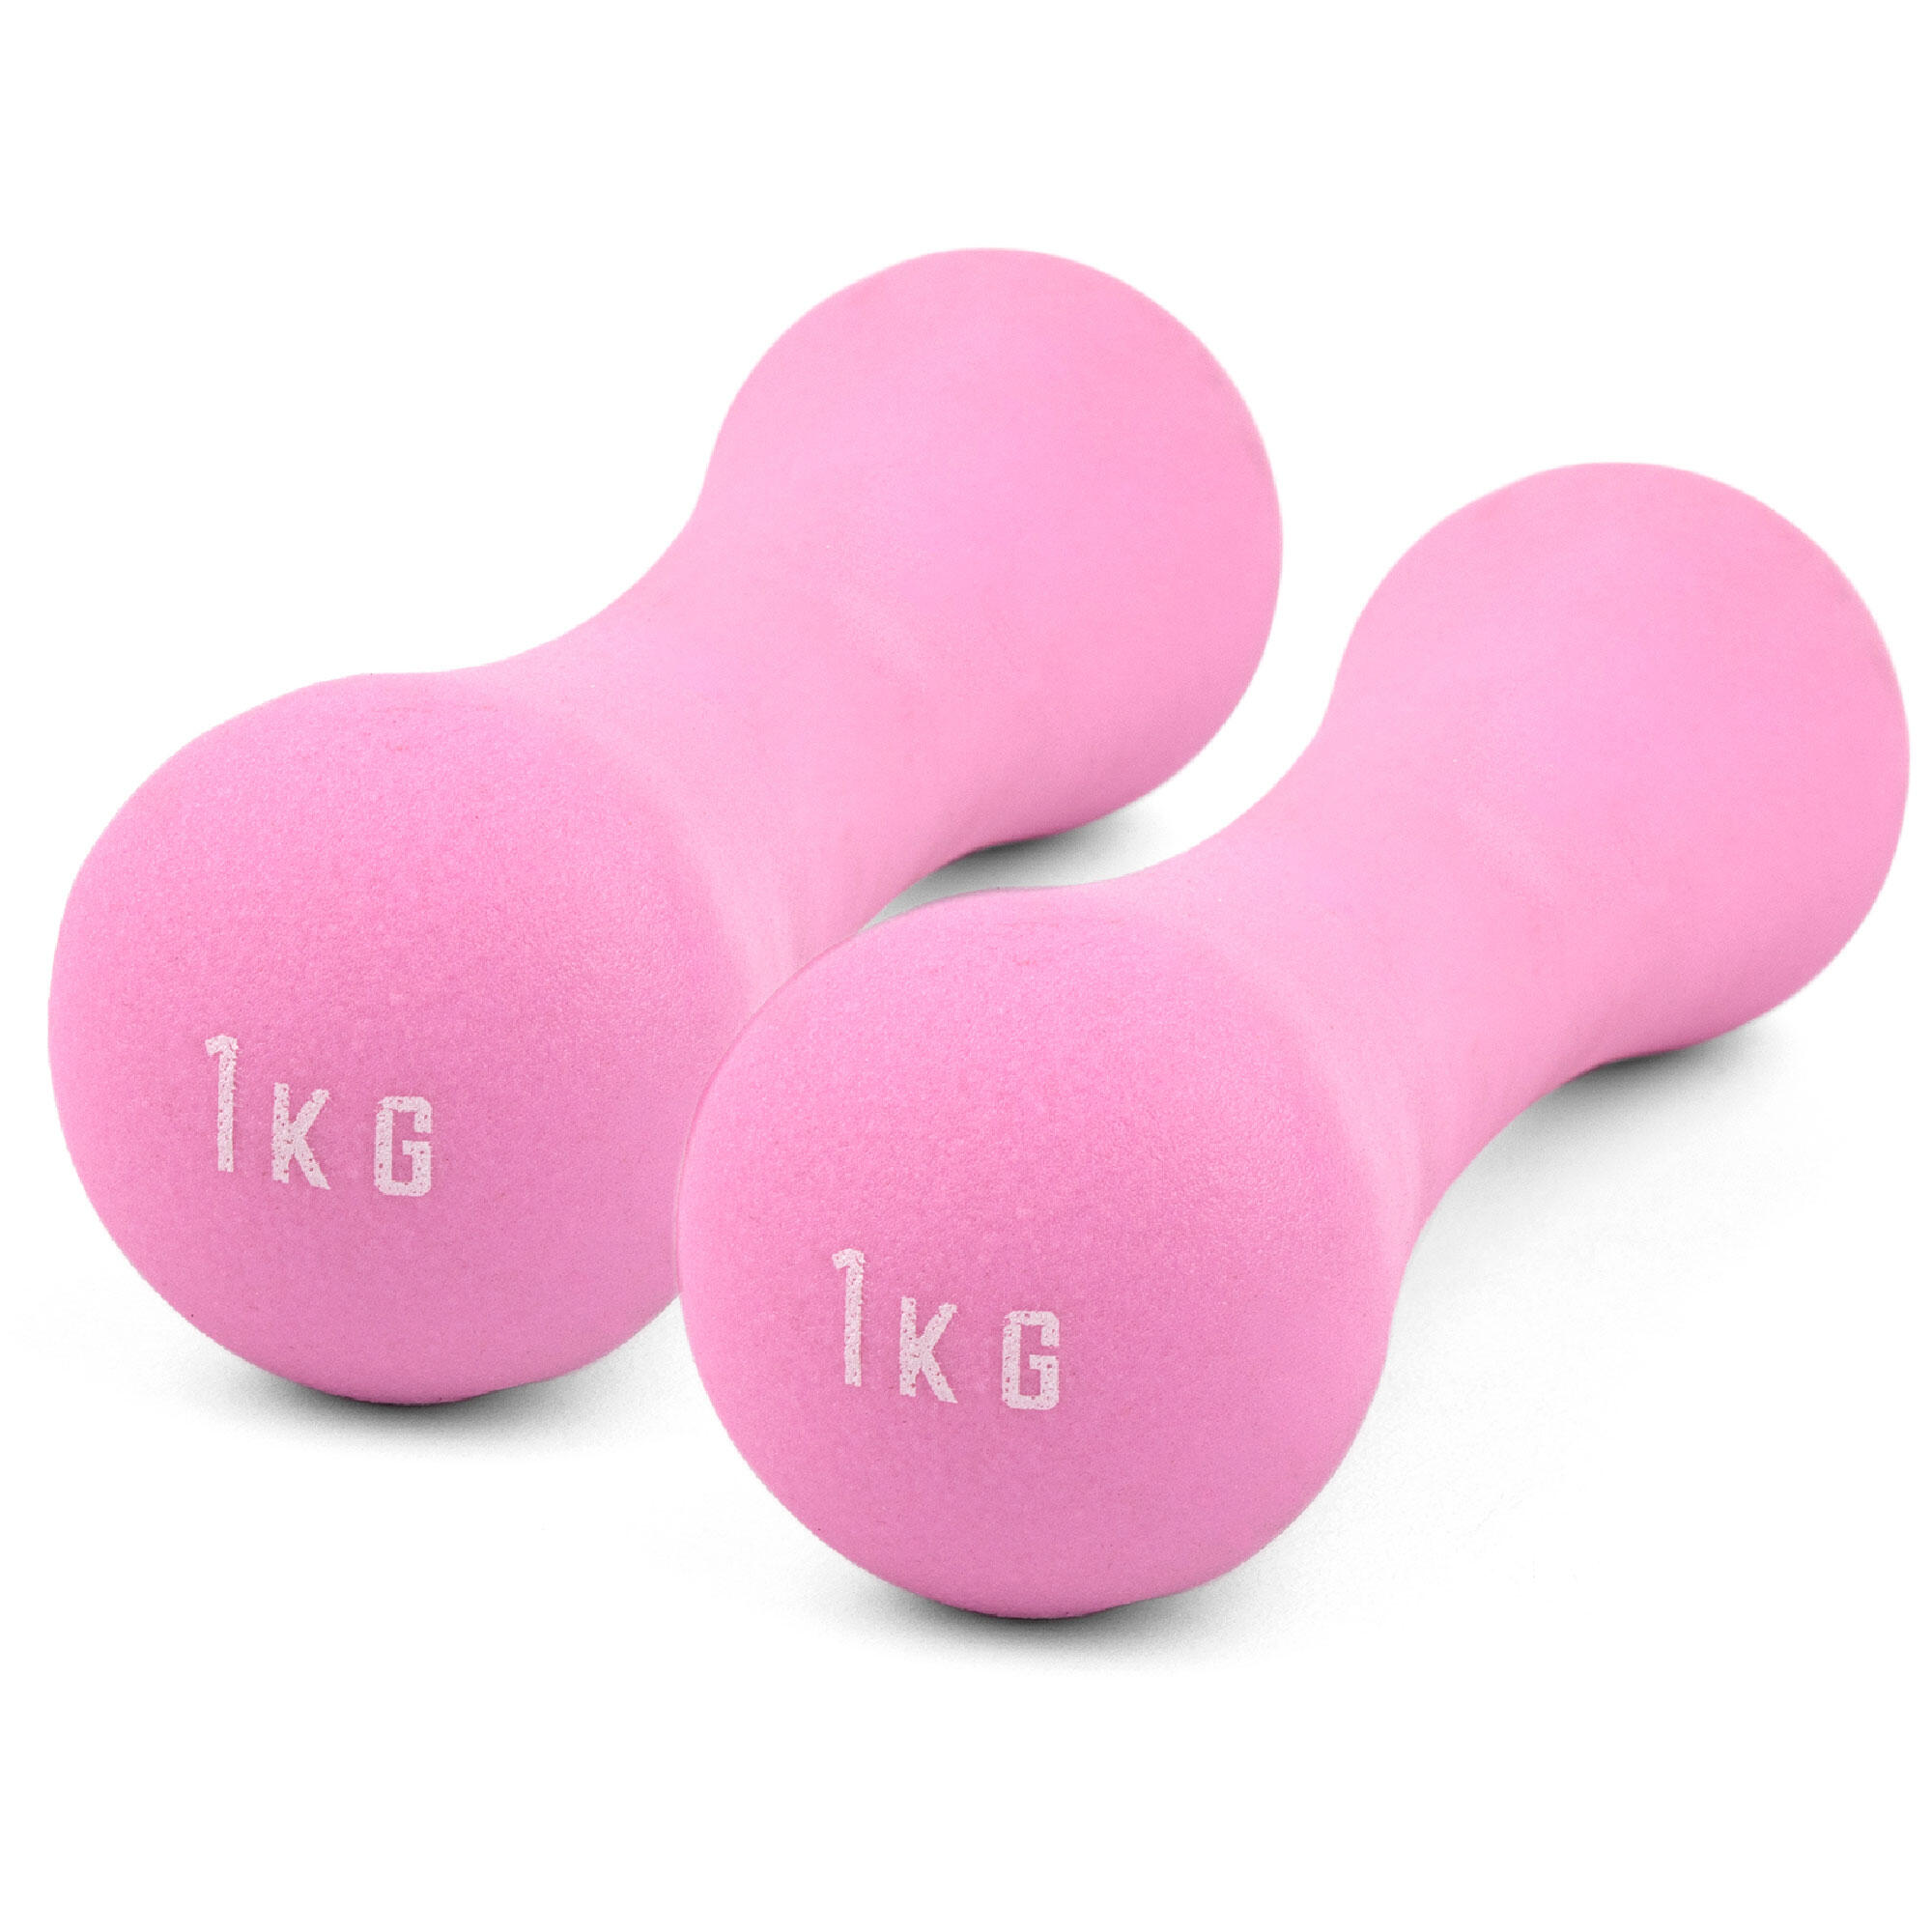 Neoprene Dumbbell Weight - 1KG PAIR - Pink 1/7